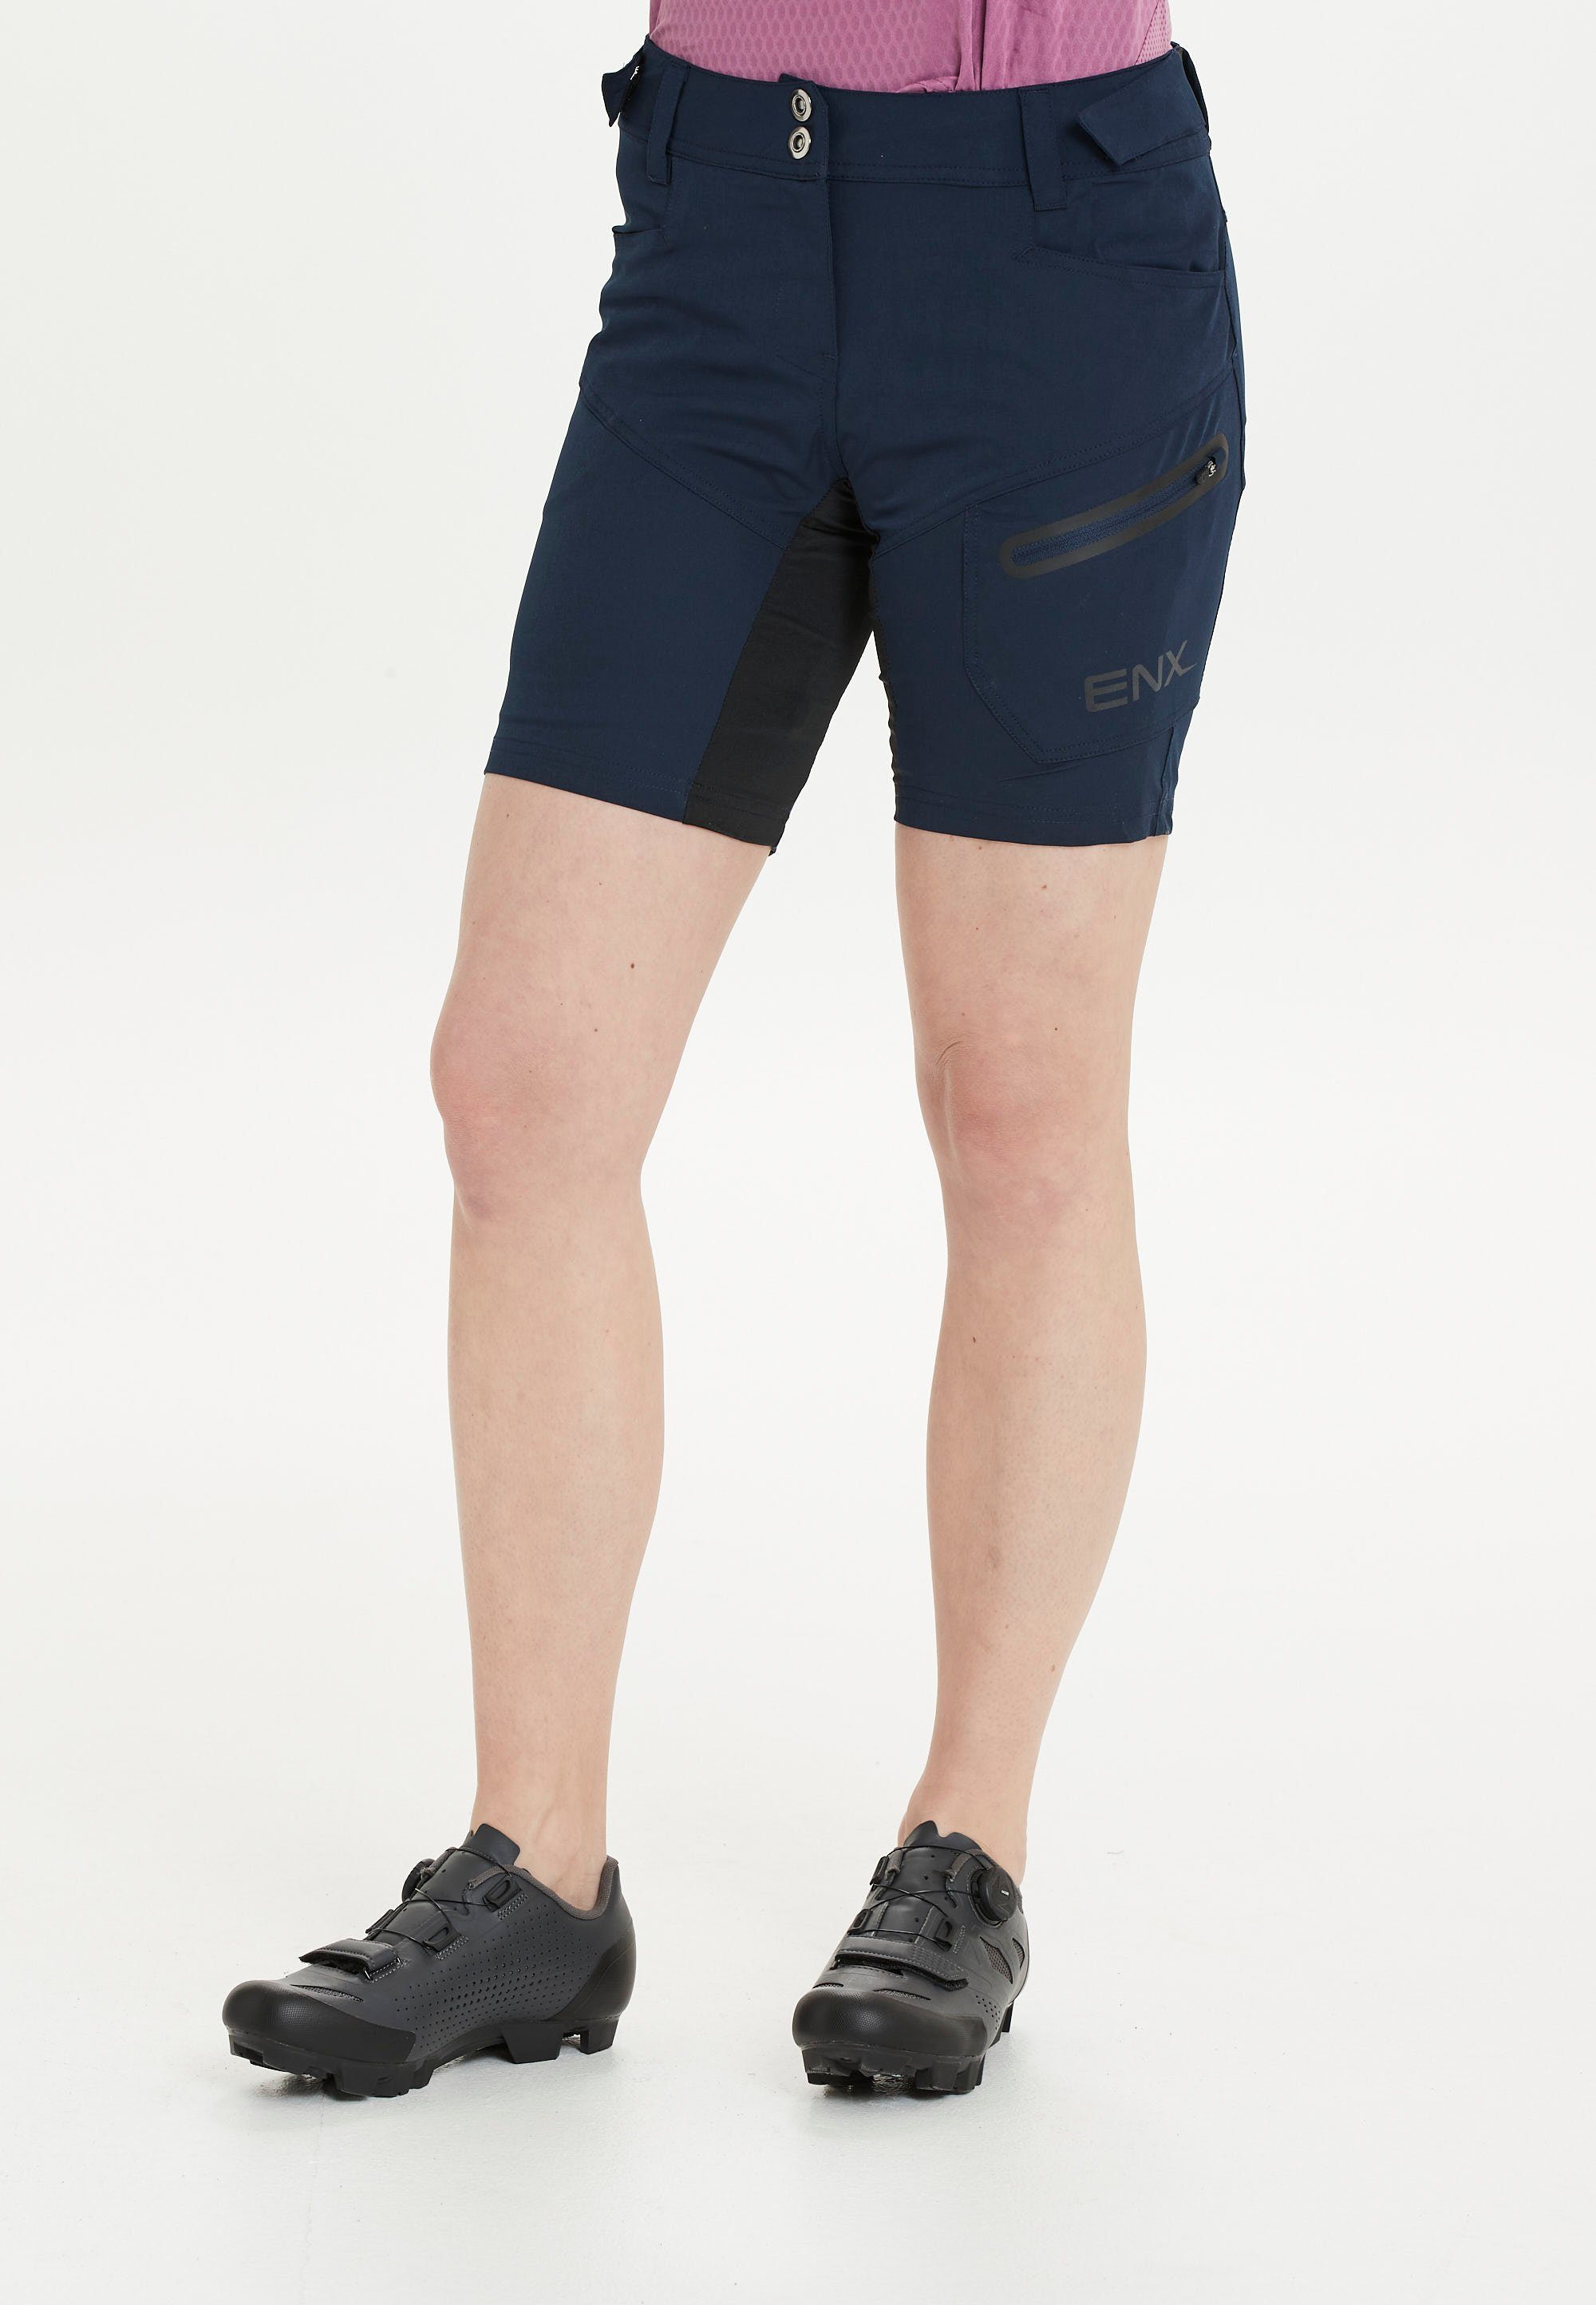 DRY 2 herausnehmbarer Schnell Radhose Shorts mit 1 W Technologie ENDURANCE trocknend in durch Innen-Tights, Jamilla QUICK